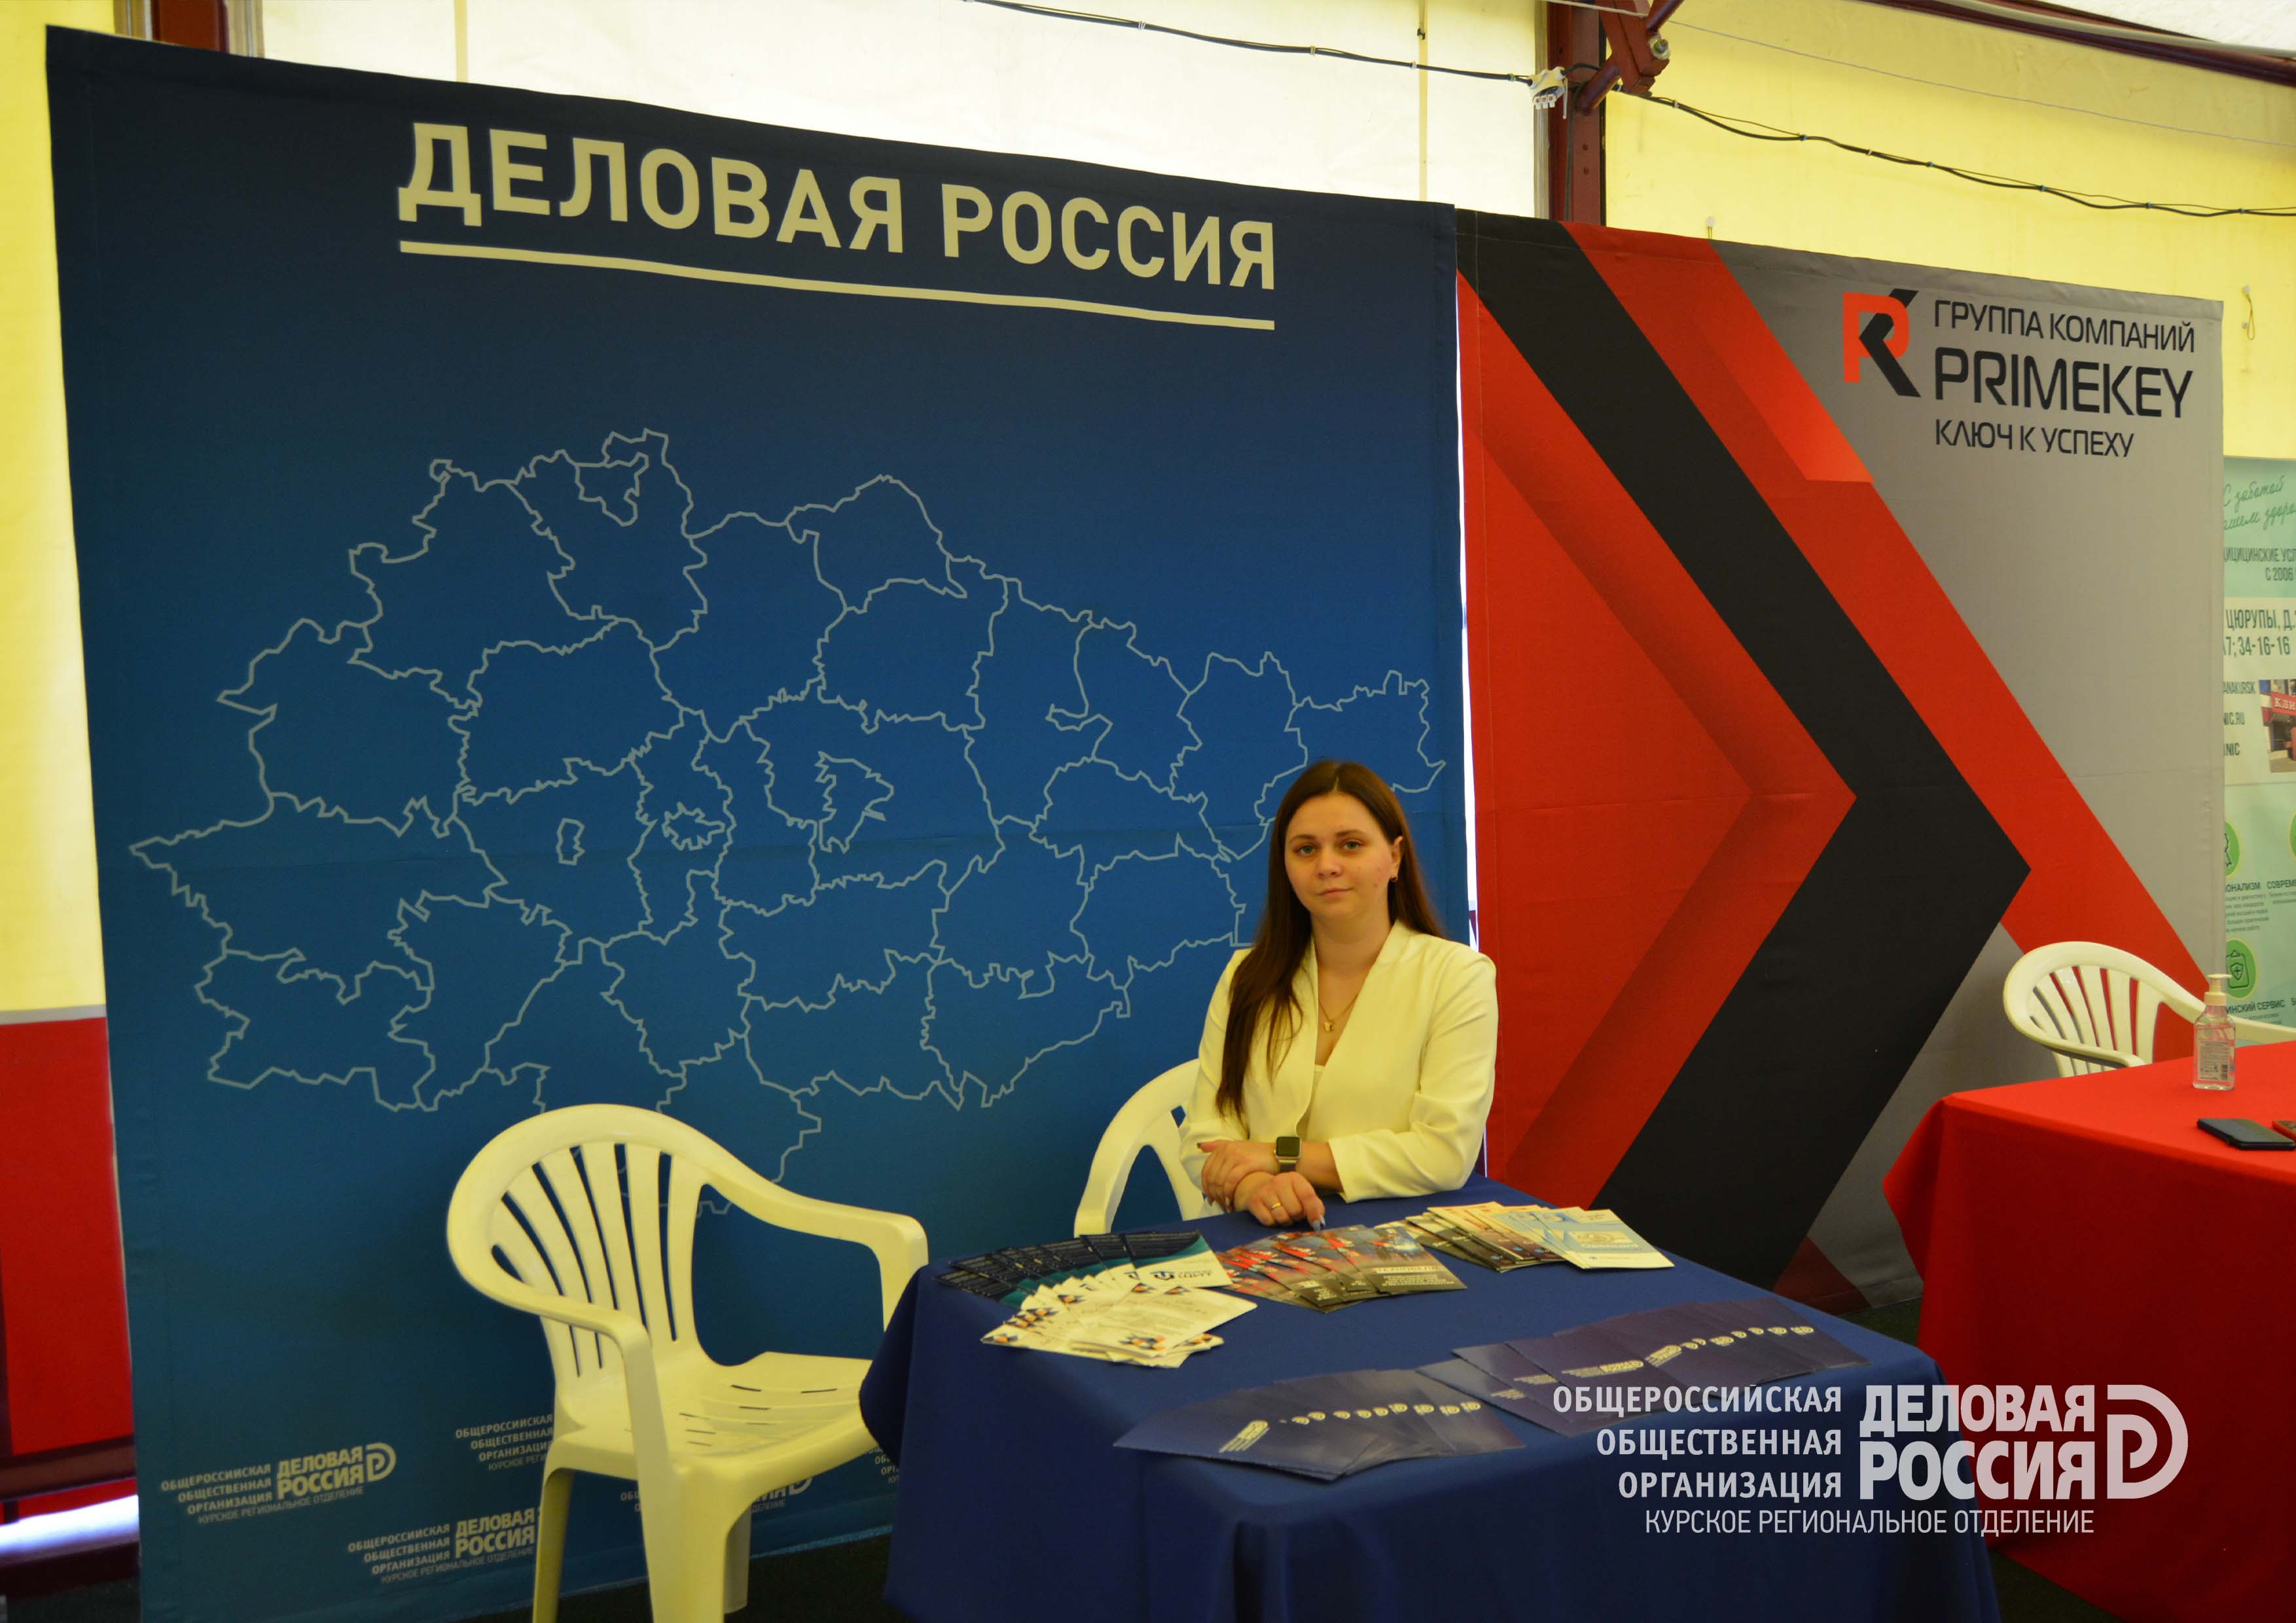 Курские делороссы – участники Курской Коренской ярмарки 2021